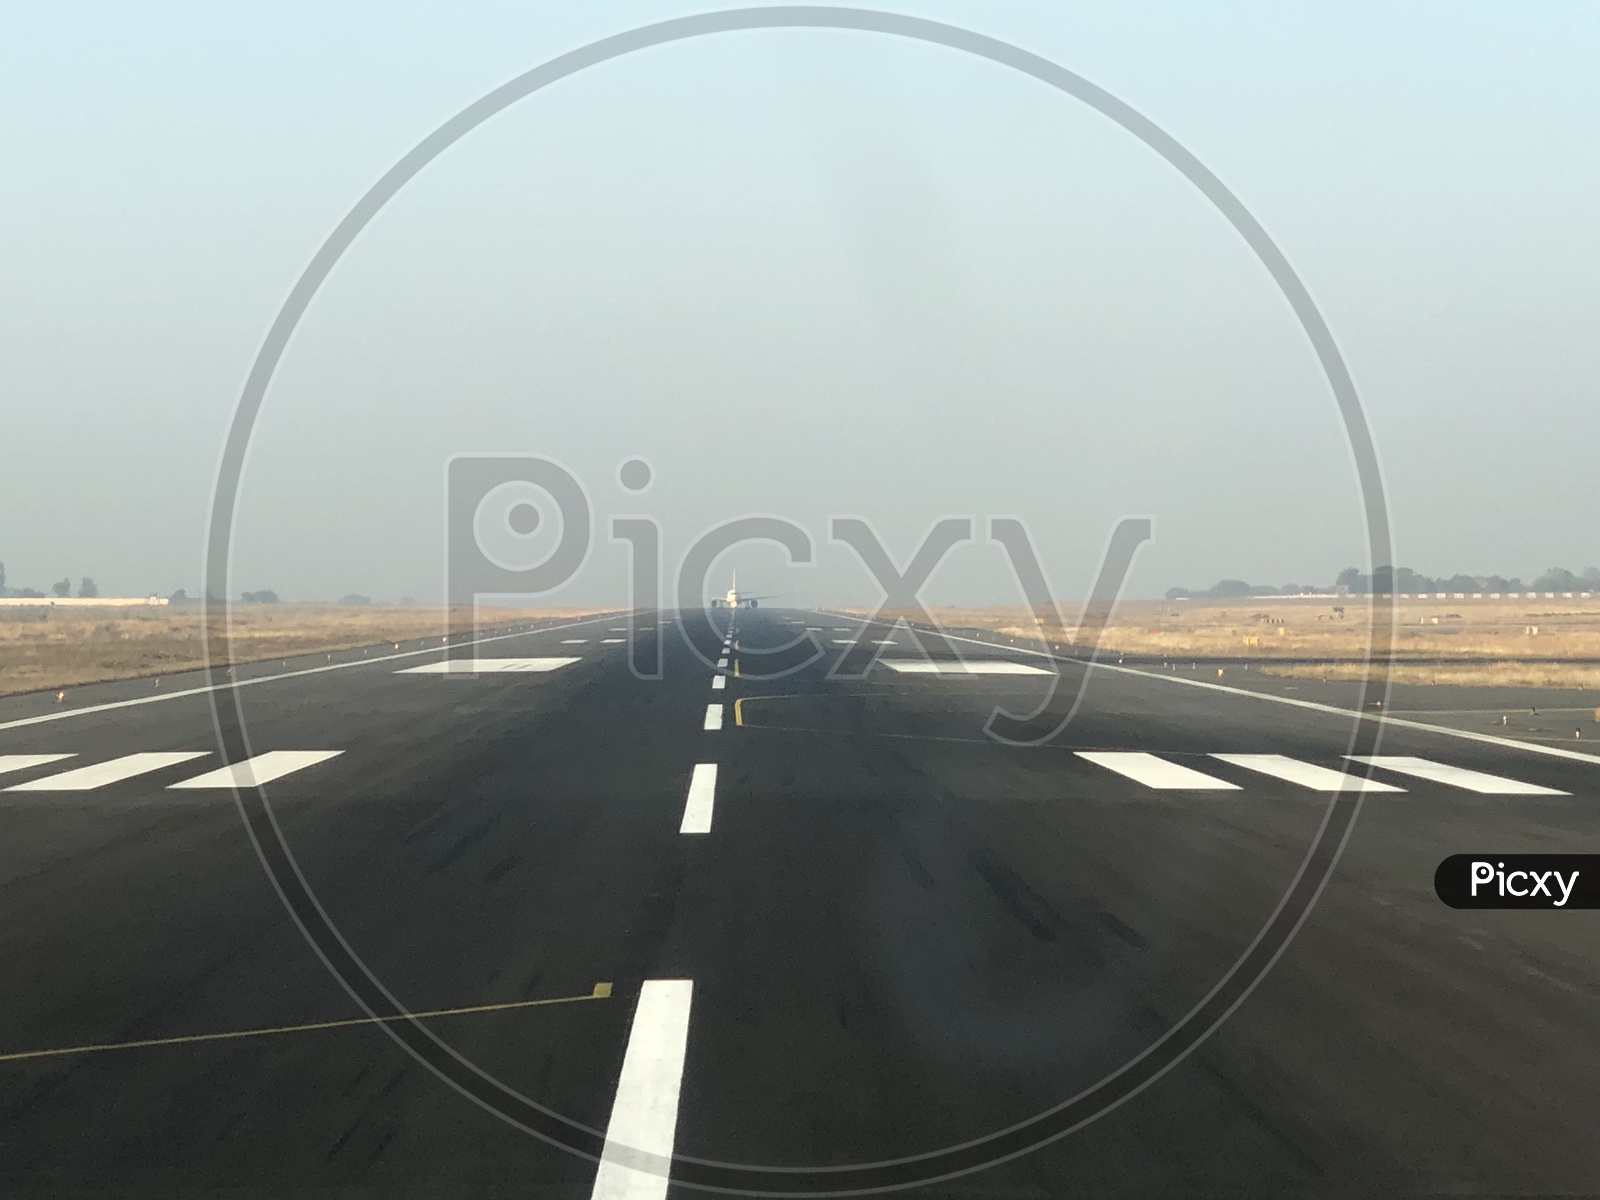 Airport Runway